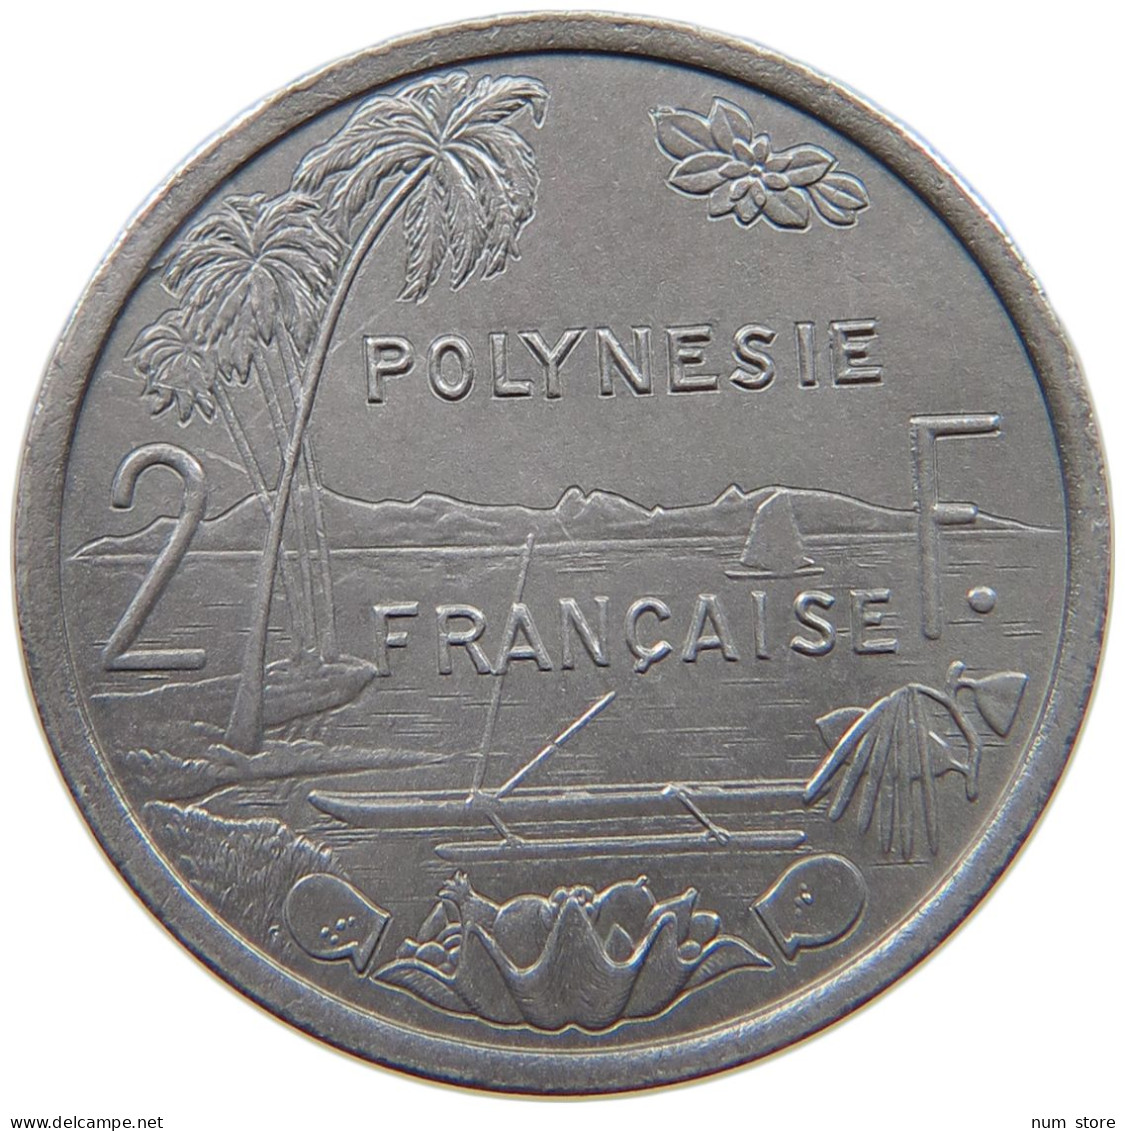 POLYNESIA 2 FRANCS 1977  #a053 0629 - French Polynesia